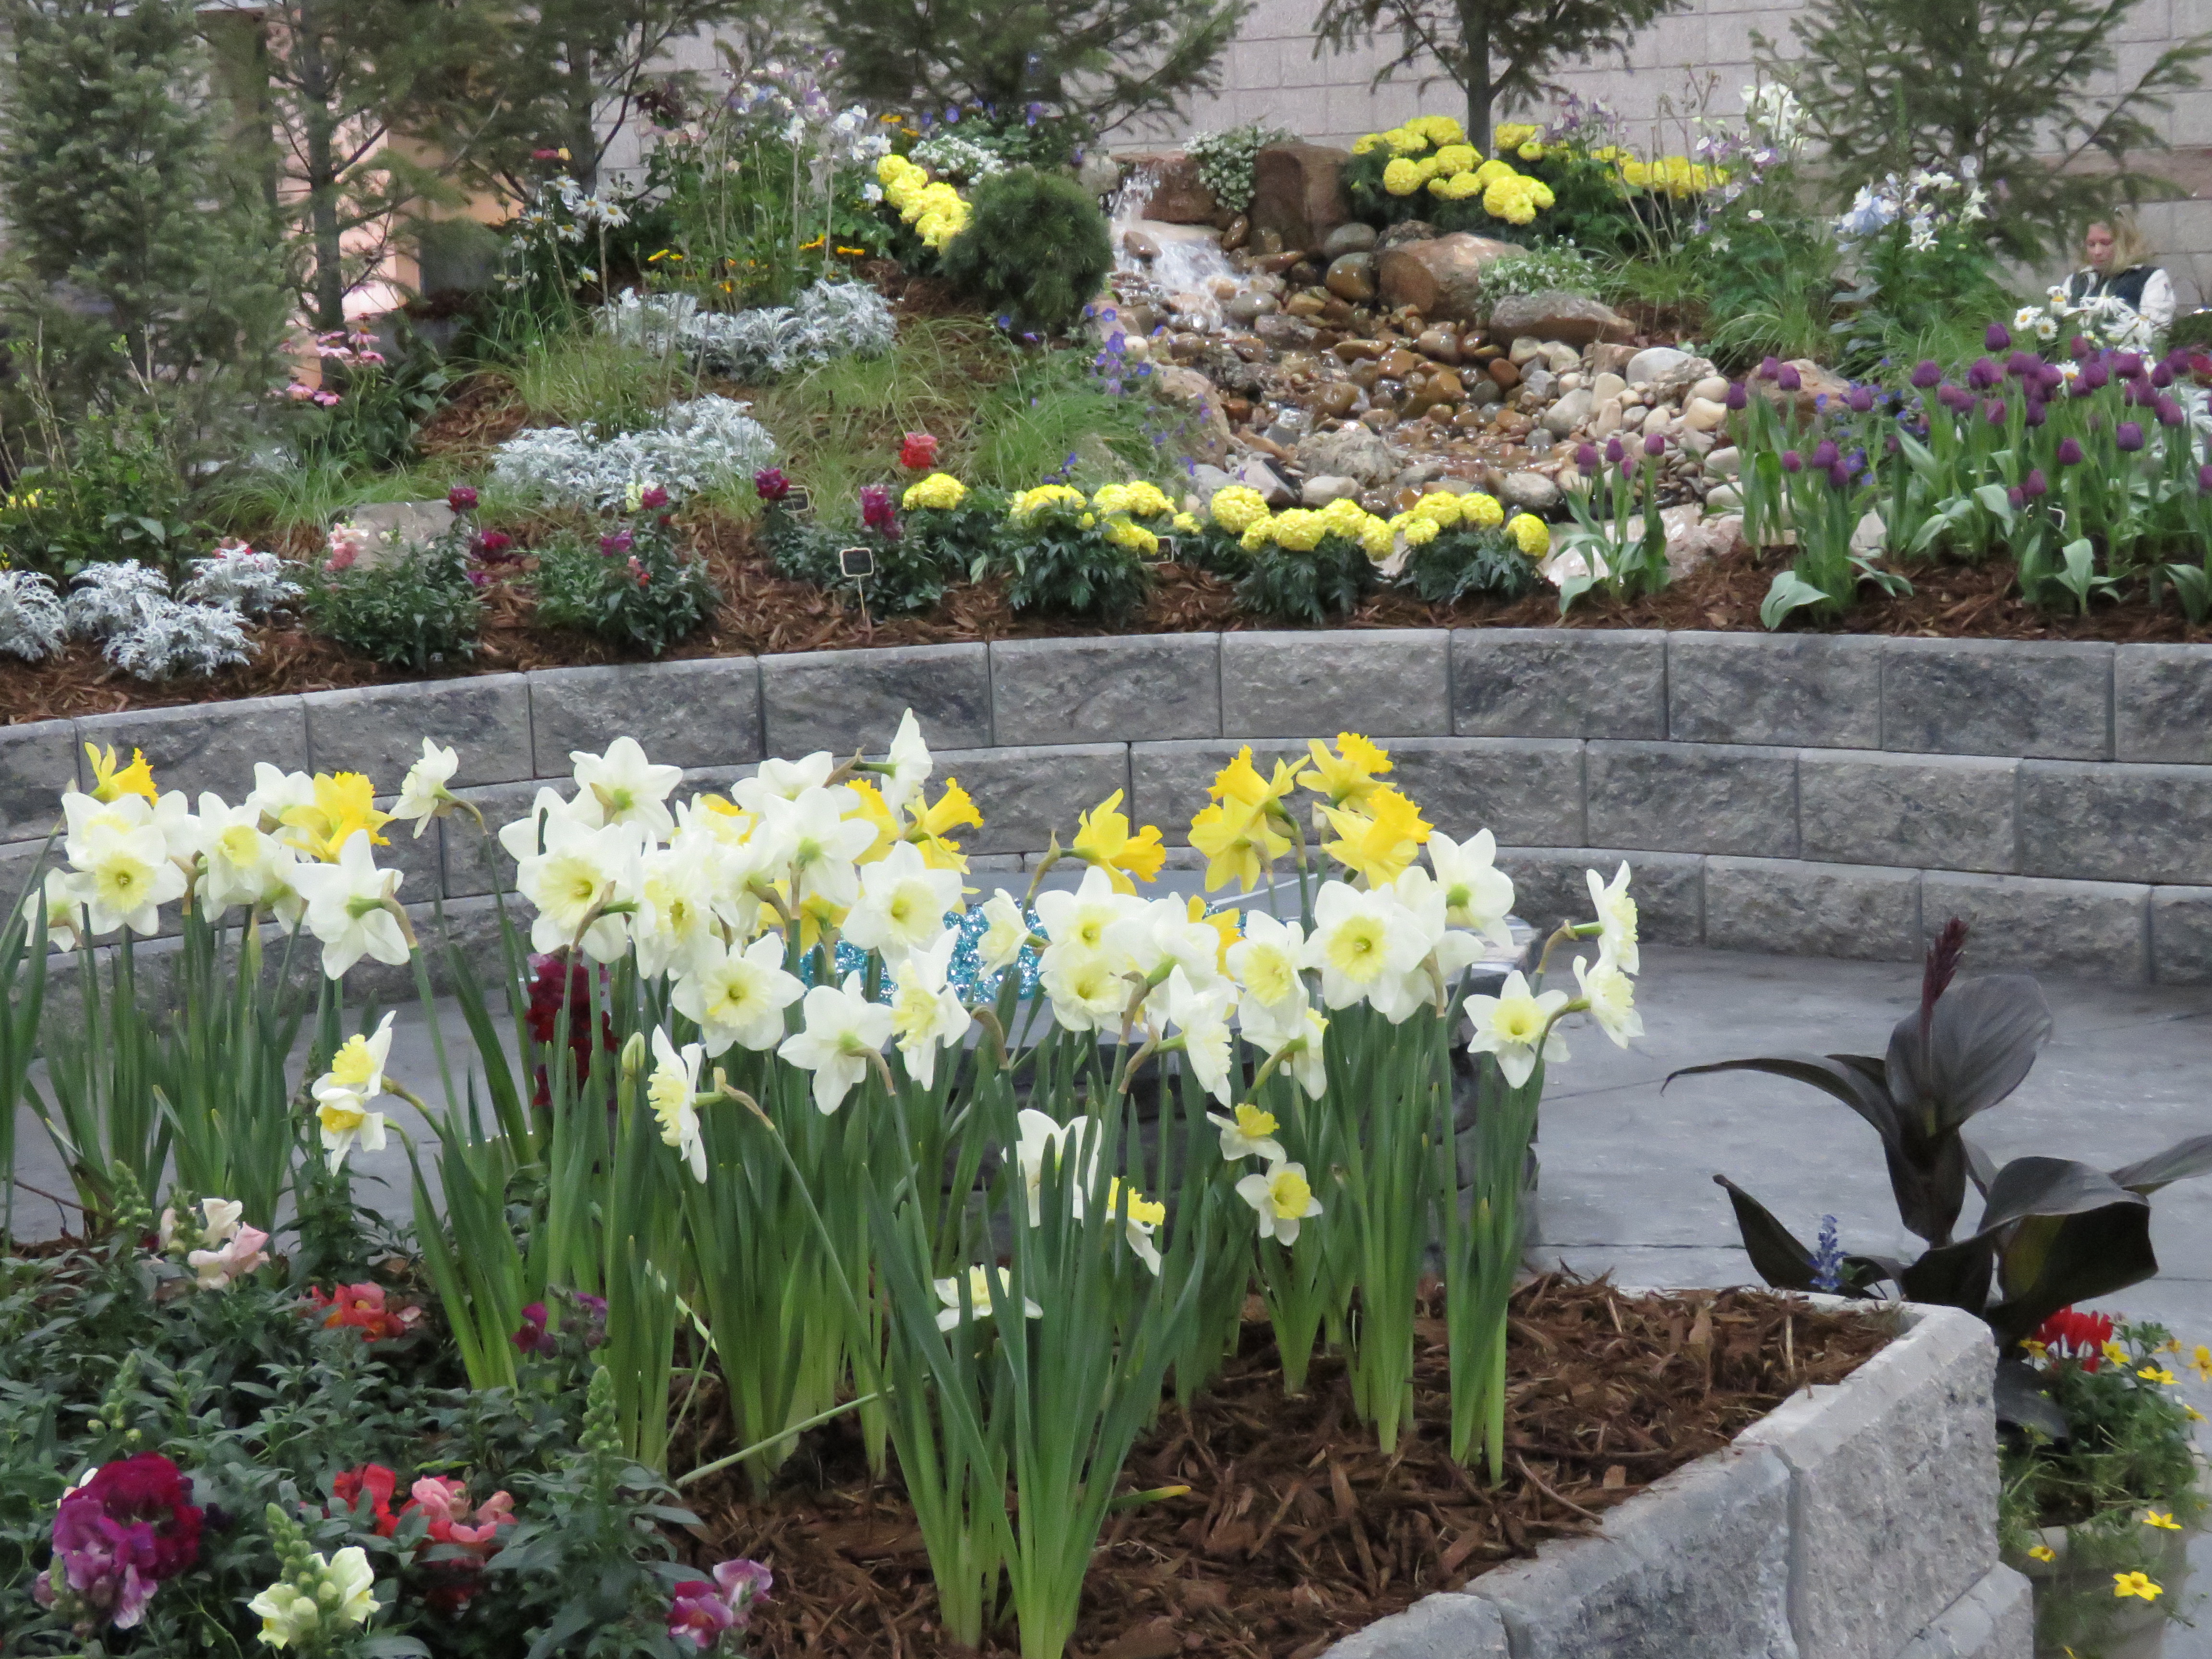 60th Annual Colorado Garden & Home Show to Feature First-Ever Accessible Garden